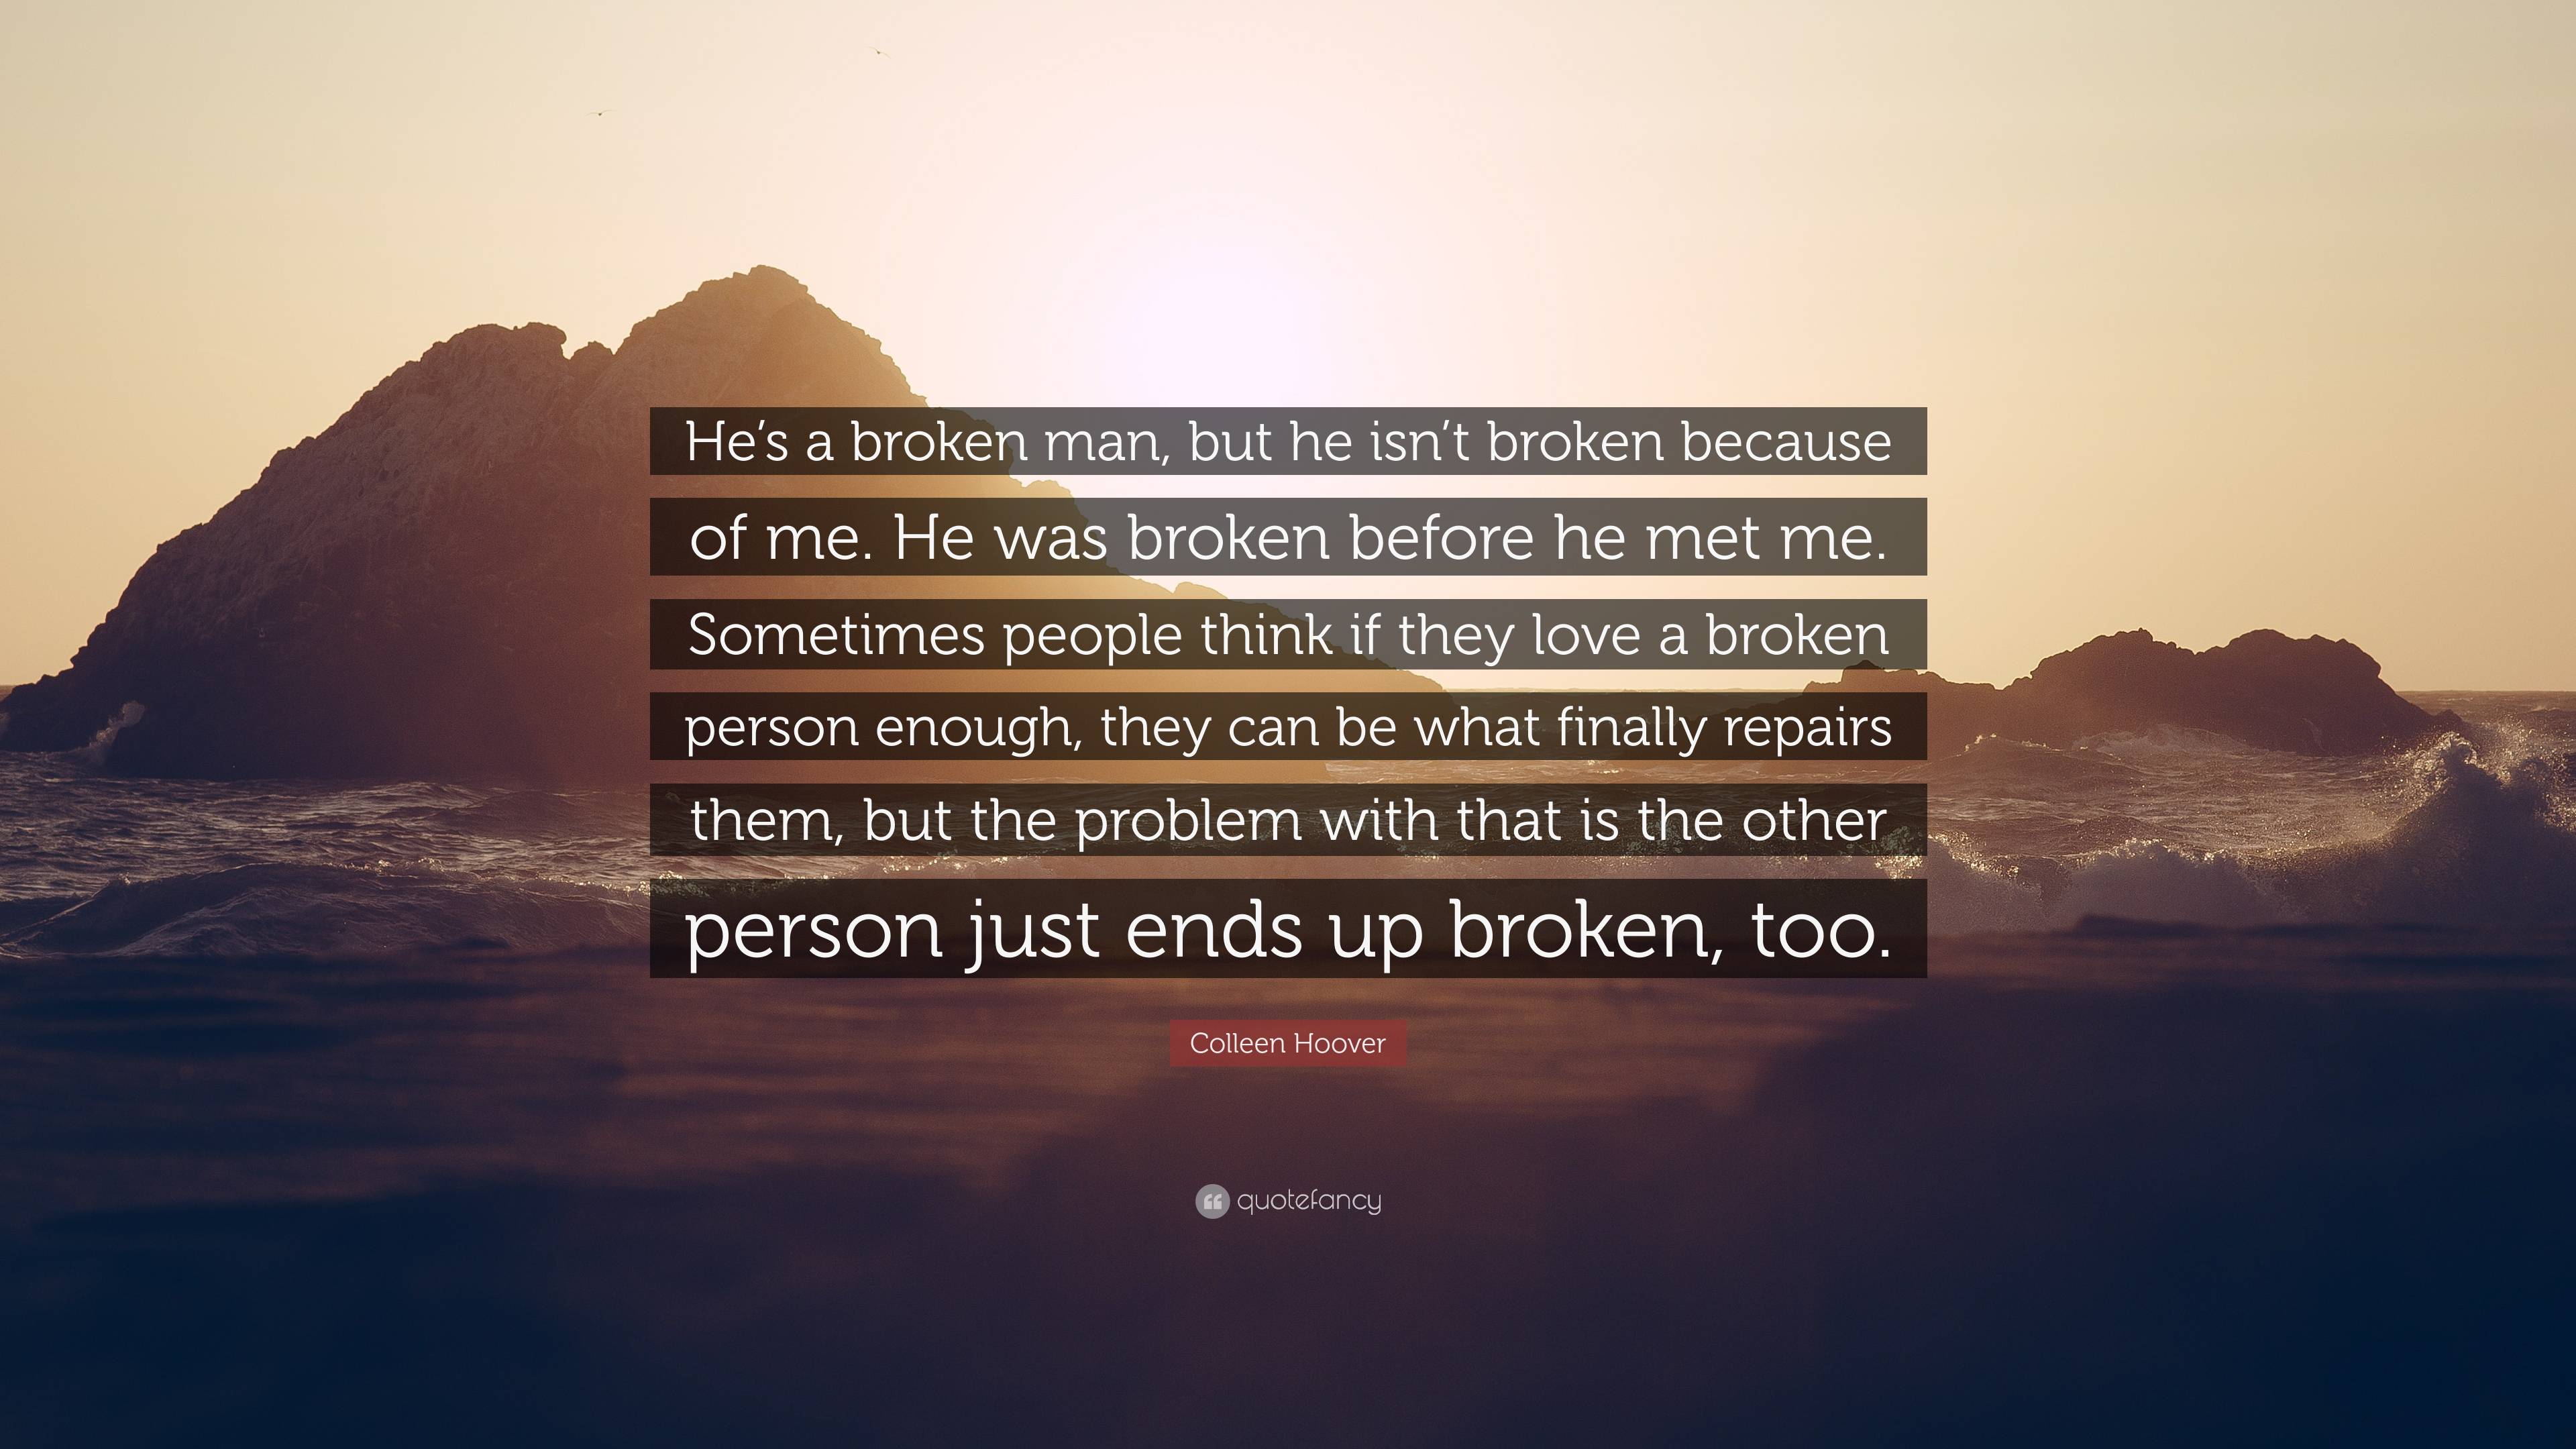 Colleen Hoover Quote: “He's a broken